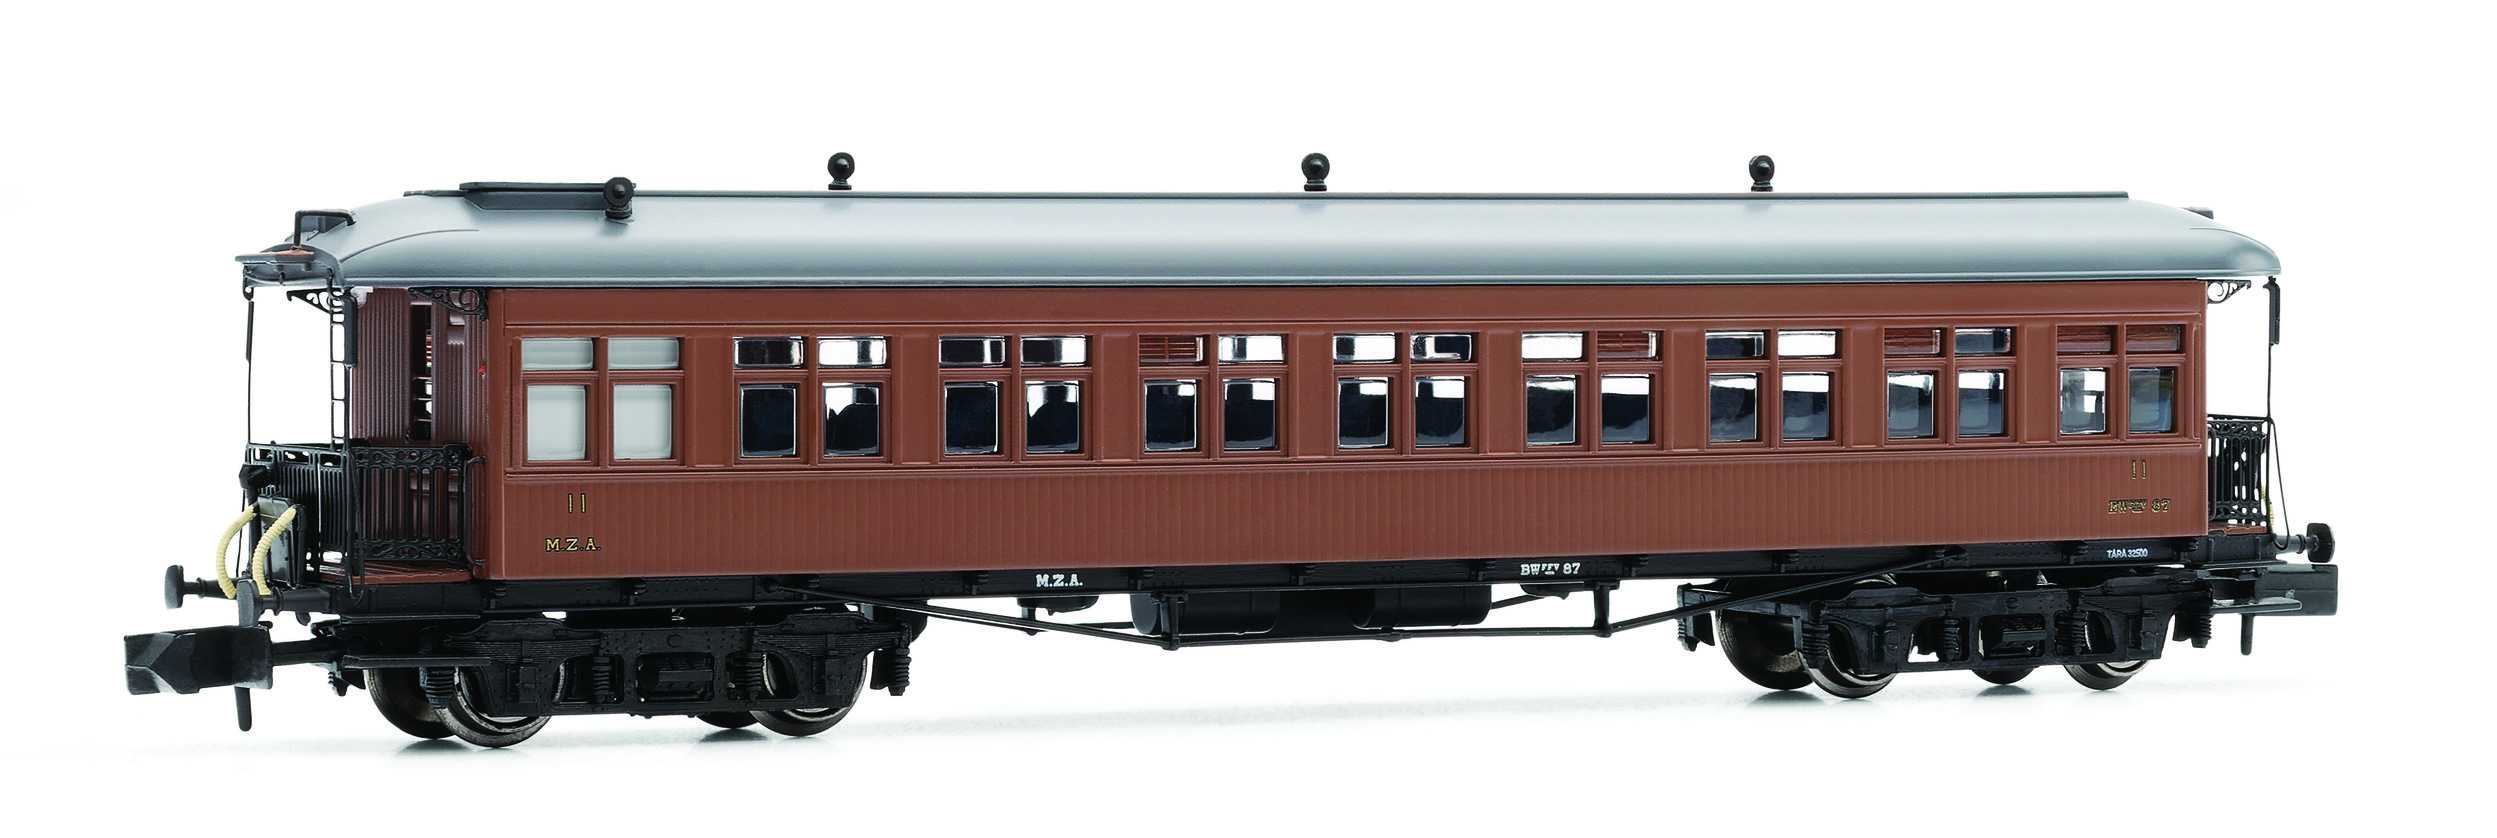 Trains miniatures : locomotives et autorail - Passager COSTA, 2e class